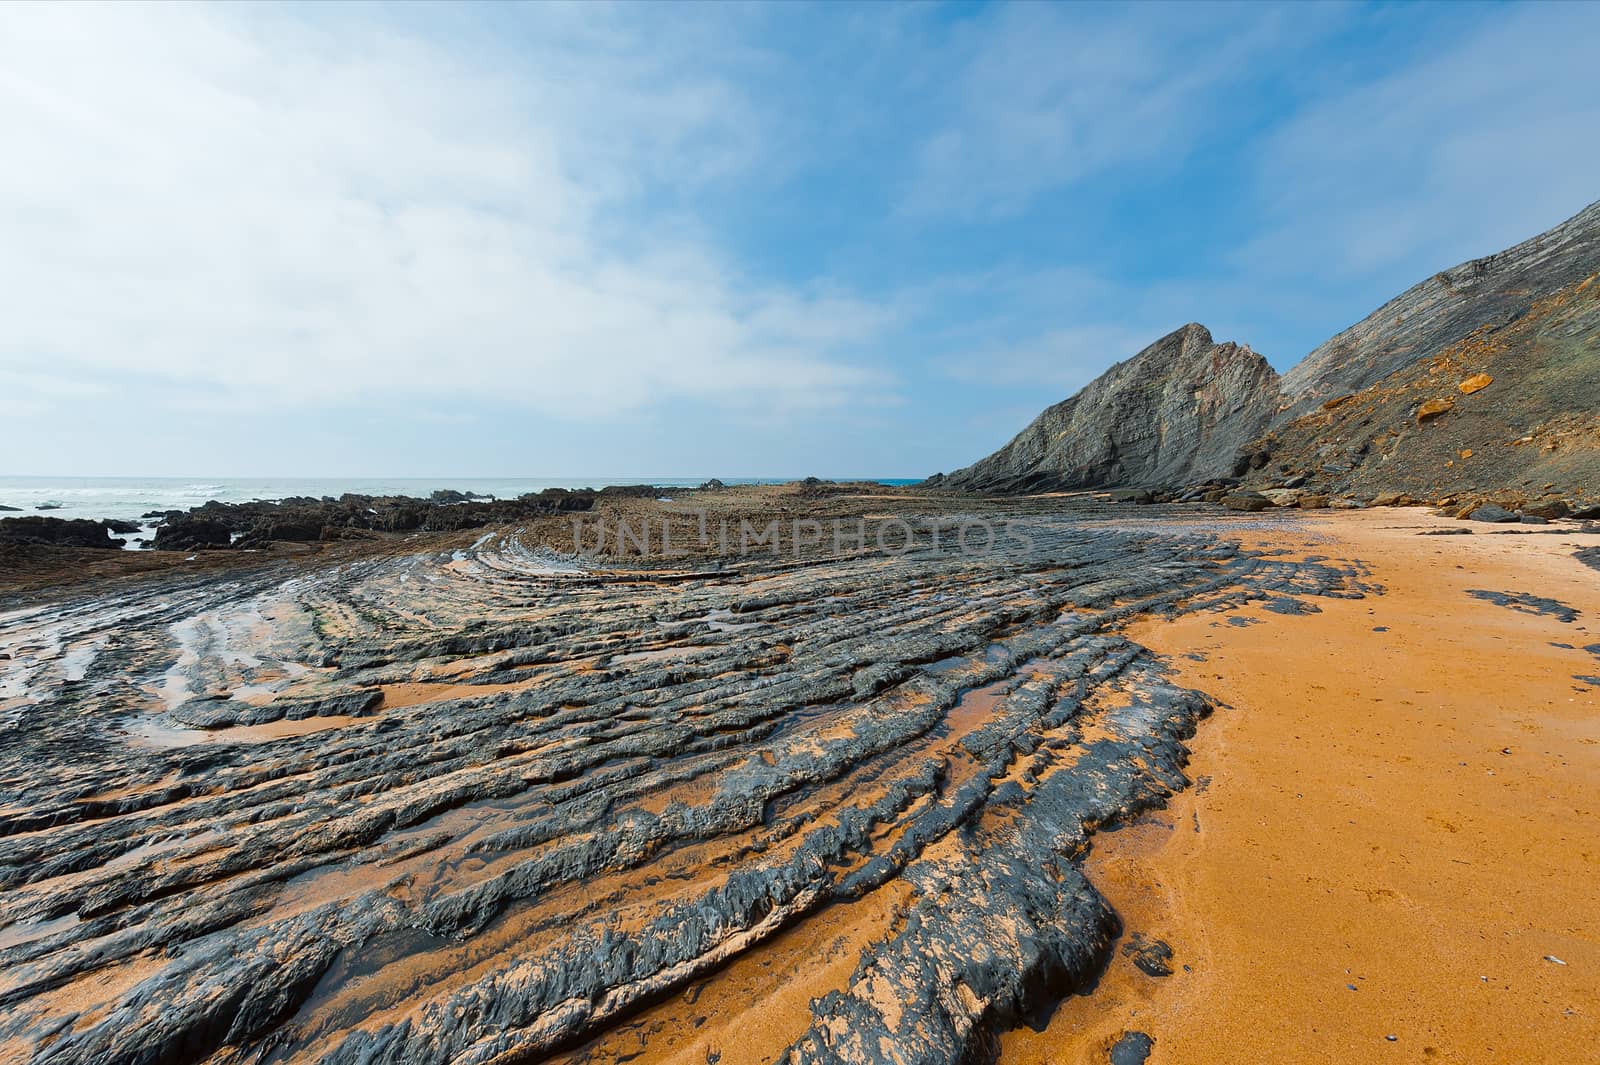 Black Rocks on the Coast of Atlantic Ocean in Portugal